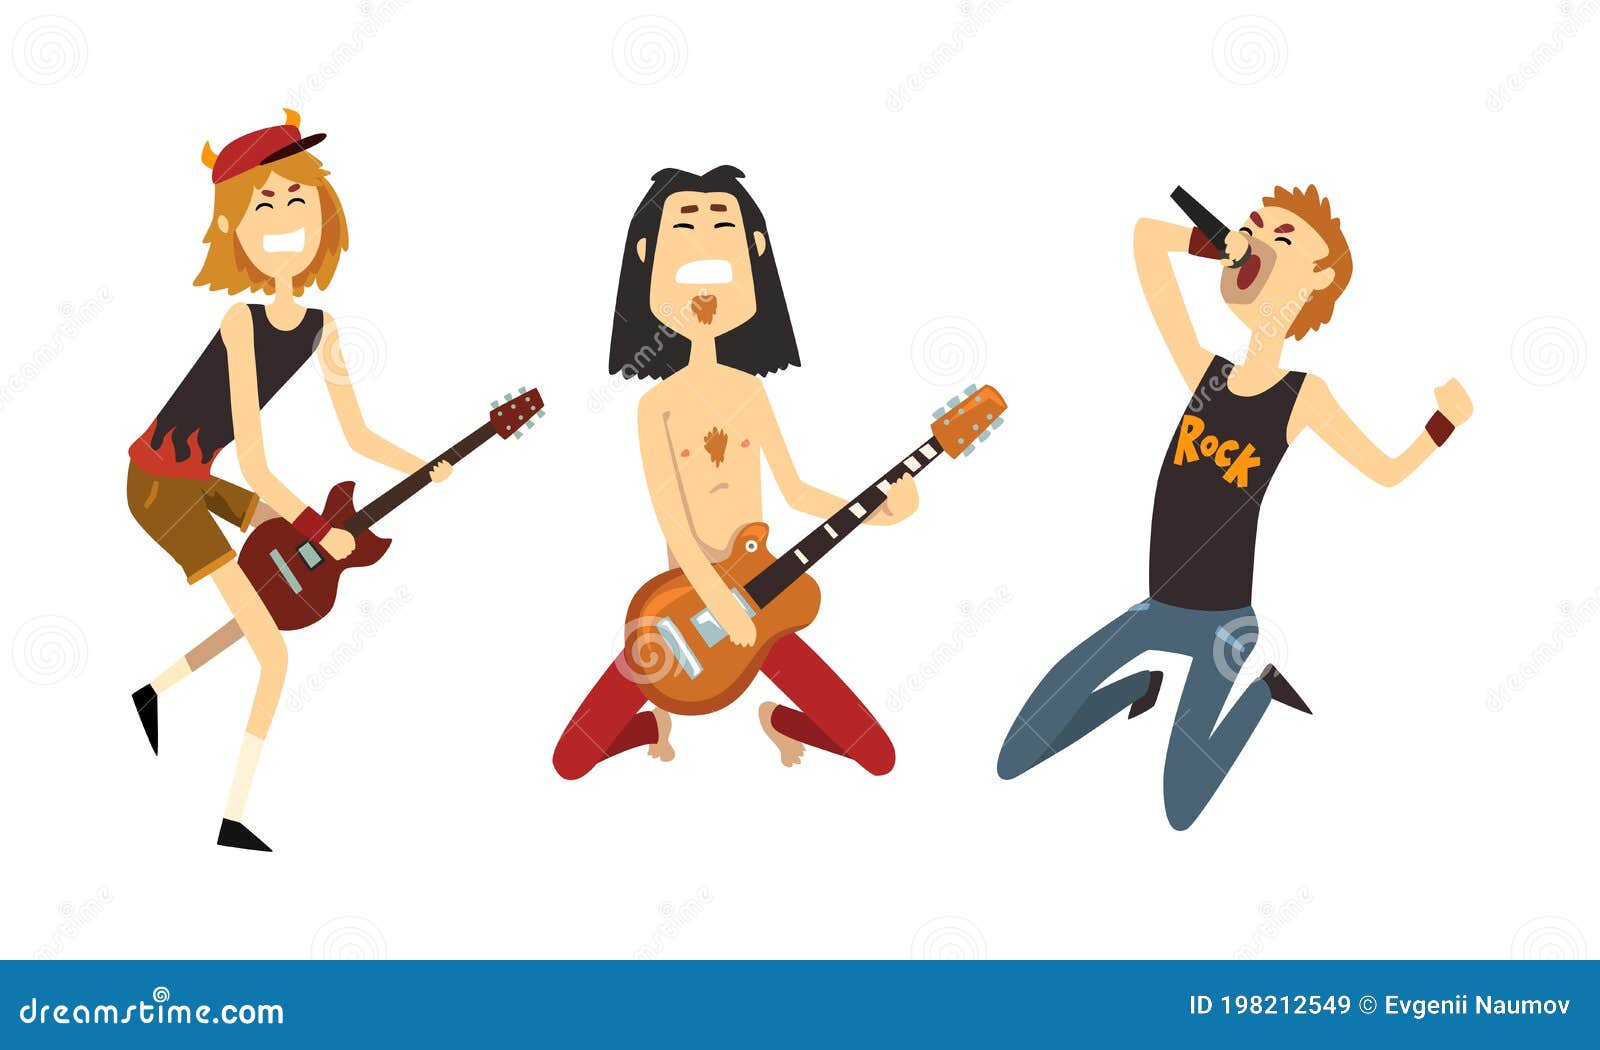 Festa dos roqueiros. músicos de desenho animado com guitarras elétricas,  conceito de apresentação no festival de música rock, ilustração vetorial de  banda criativa de cantores isolados no fundo branco